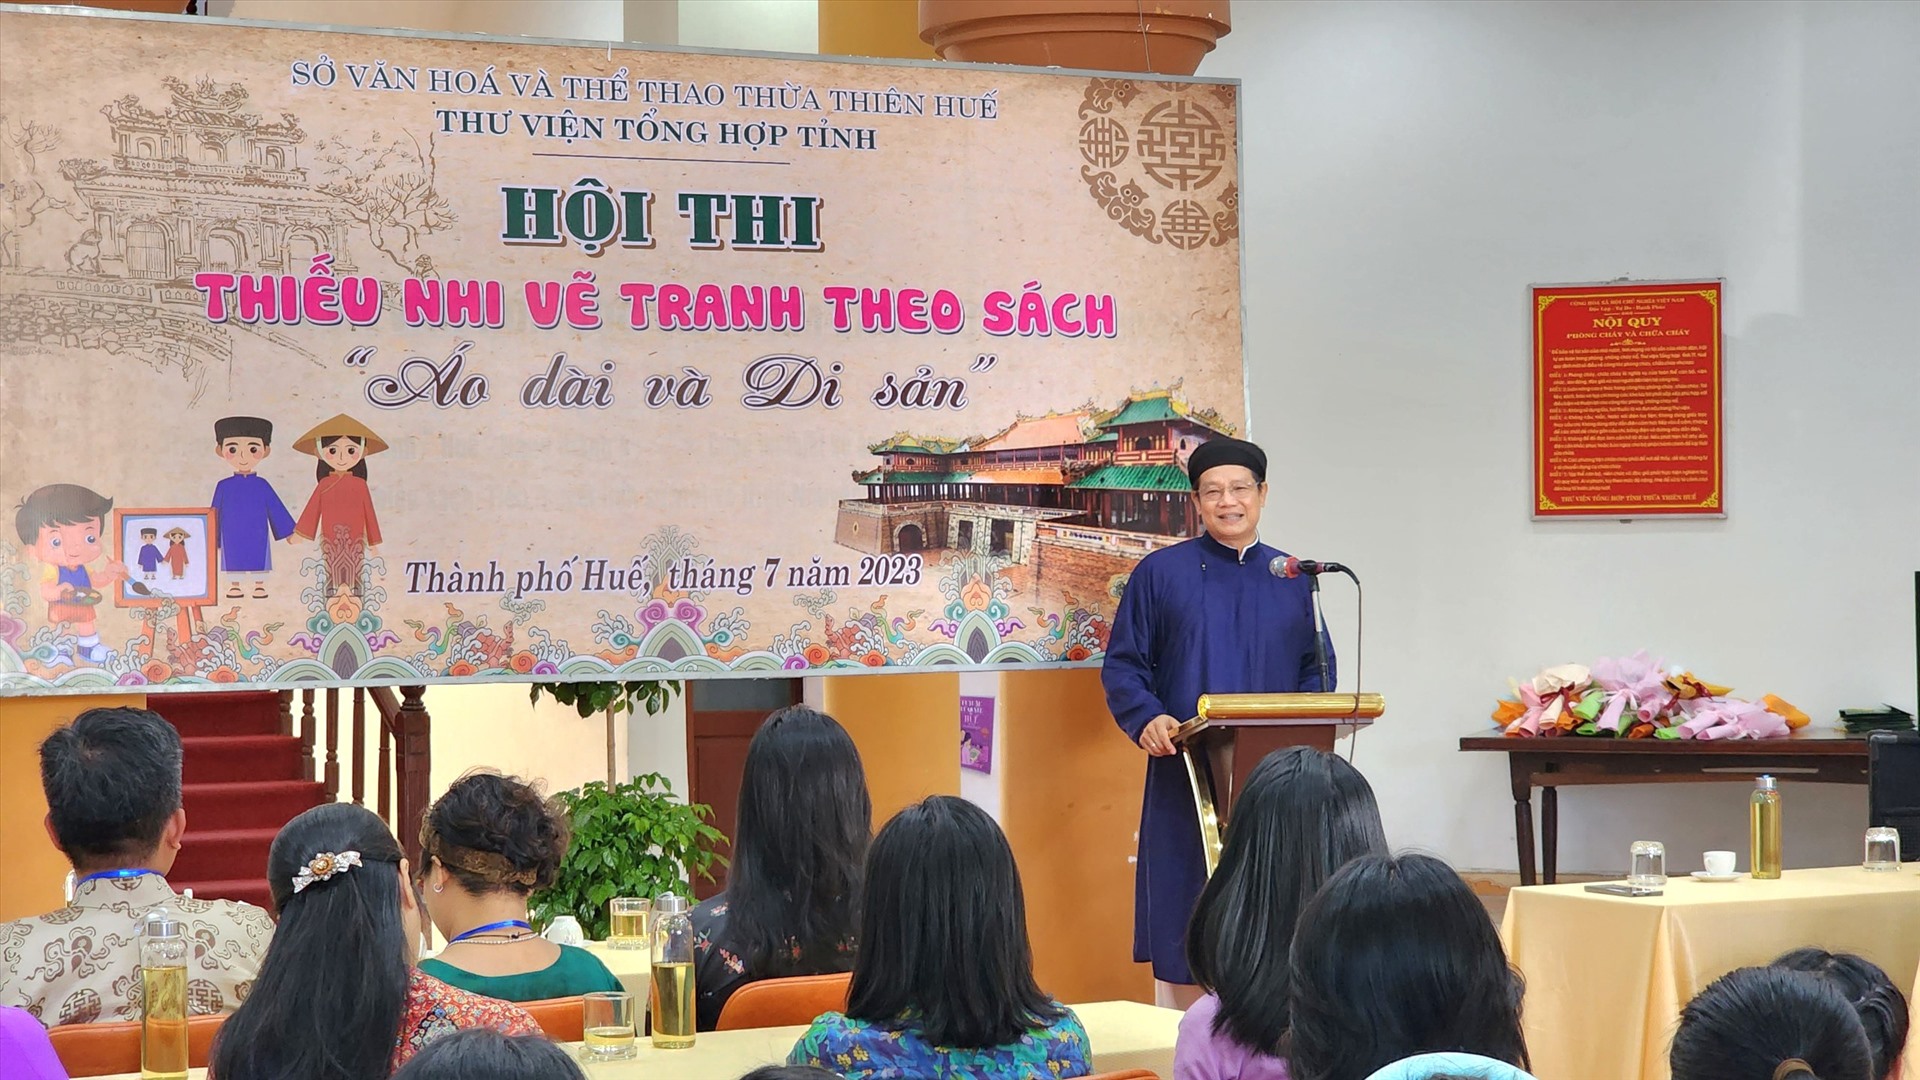 Vòng chung kết và trao giải Hội thi Thiếu nhi vẽ tranh theo sách năm 2023 sẽ diễn ra trong một tuần, bắt đầu từ ngày 5.7 đến 12.7.2023 tại Thư viện Tổng hợp tỉnh Thừa Thiên Huế.